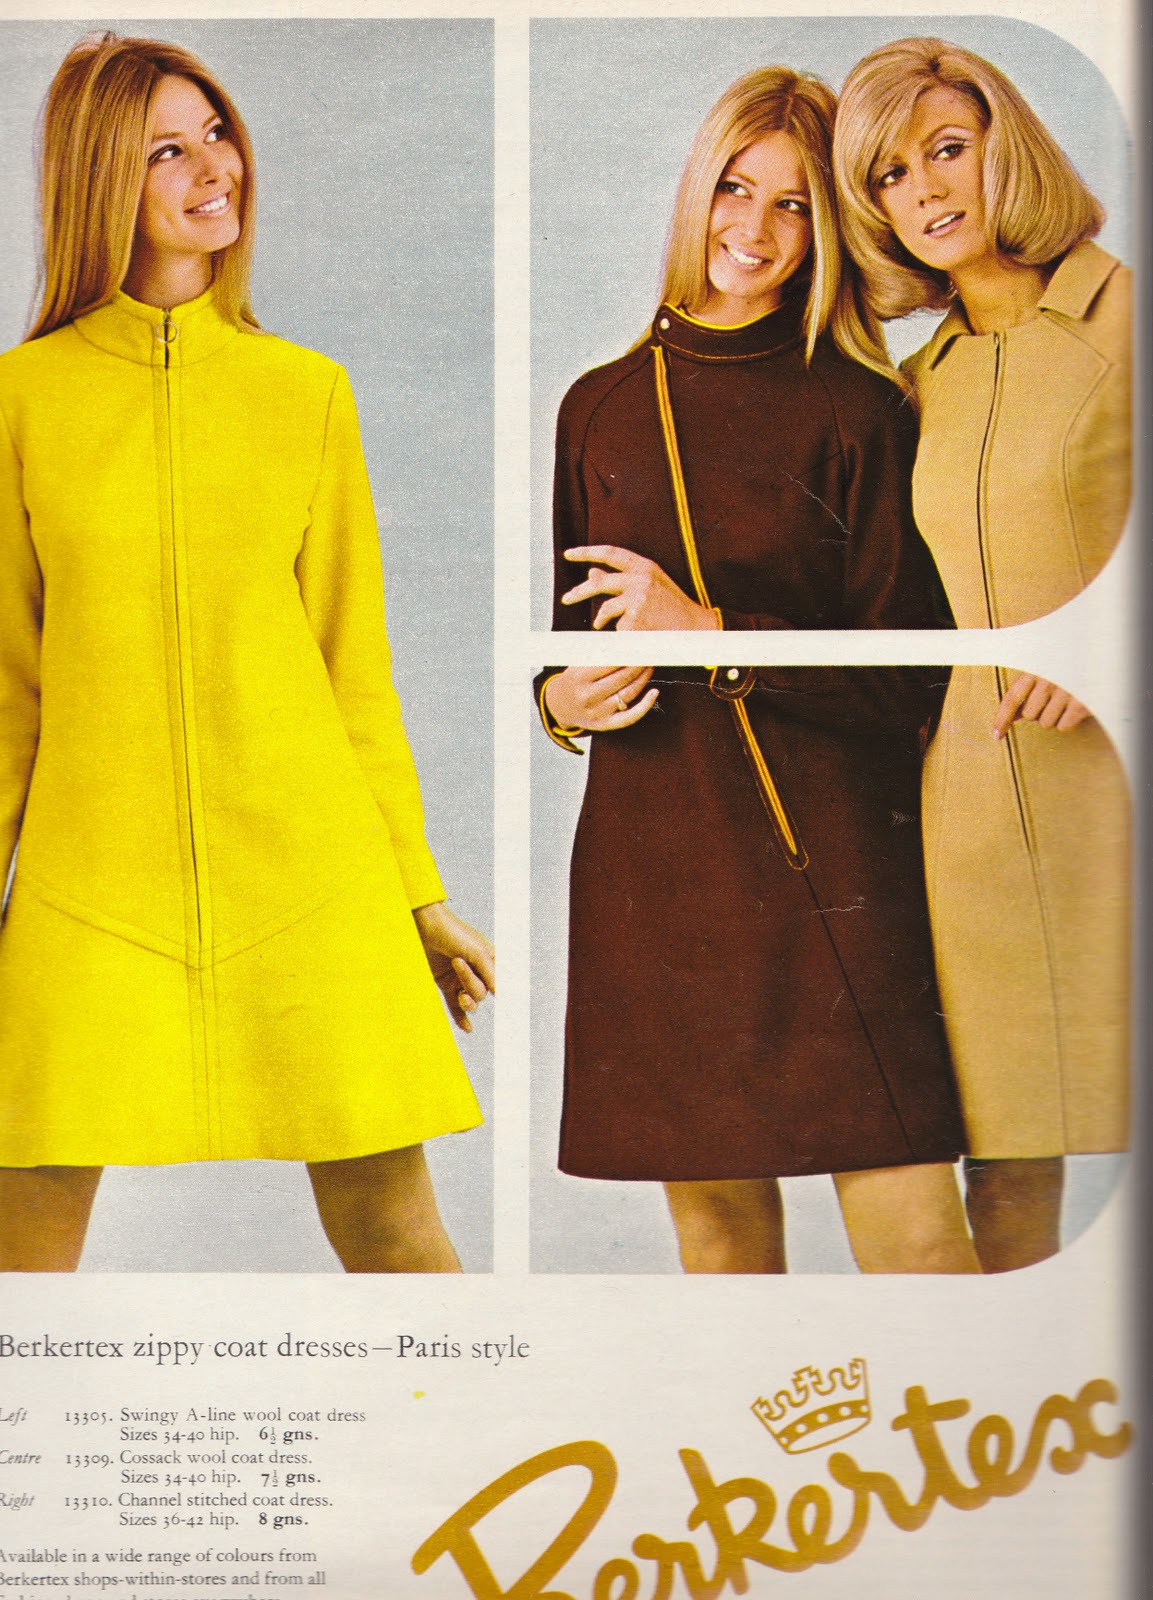 Include Me Out: Nova Magazine Fashion 1967